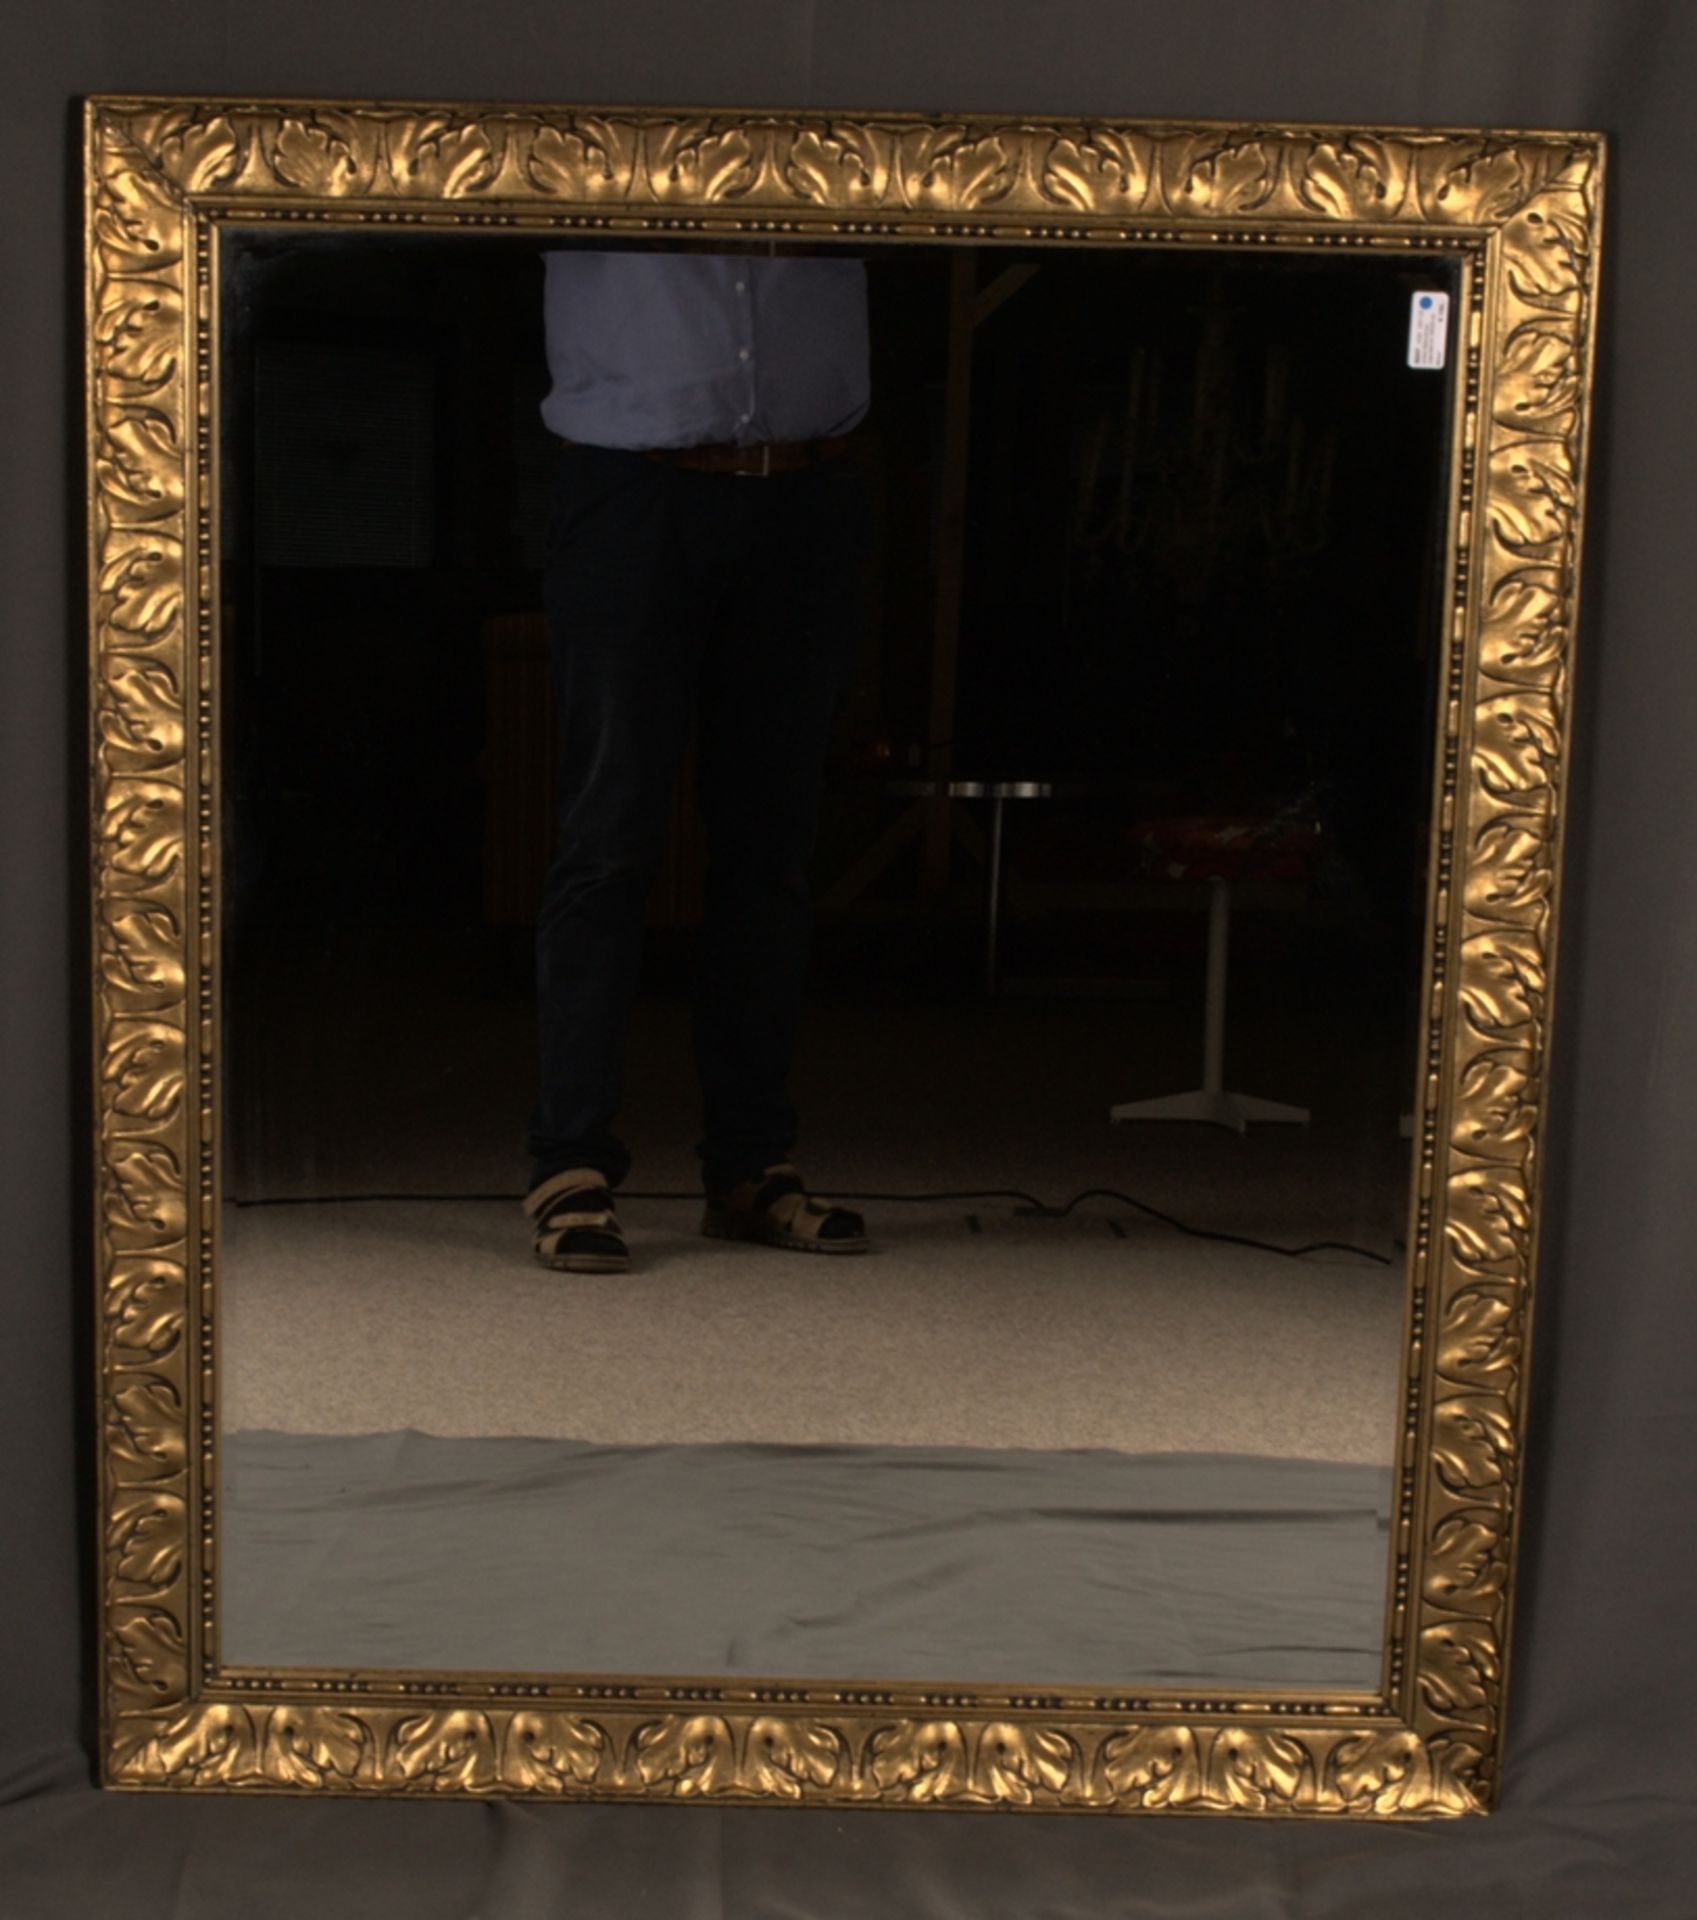 Antiker Bilderrahmen, Jugendstil um 1900/20 mit eingesetztem belegtem Spiegelglas. Schöner Erhalt. - Image 5 of 6